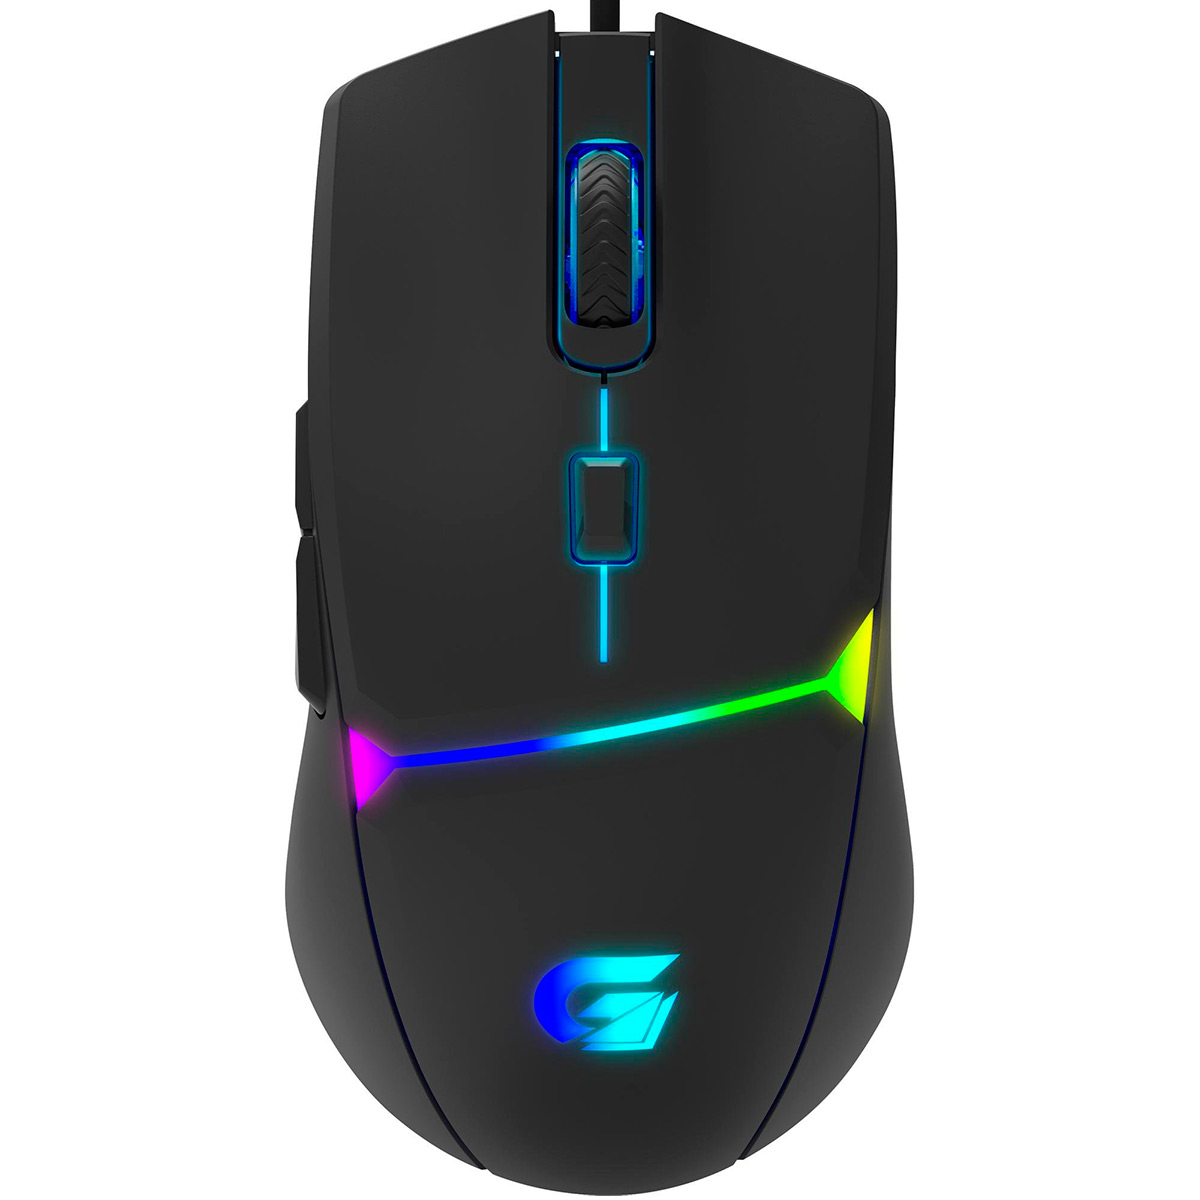 Mouse Gamer Fortrek Crusader - 7200dpi - 6 Botões - LED RGB - 70526